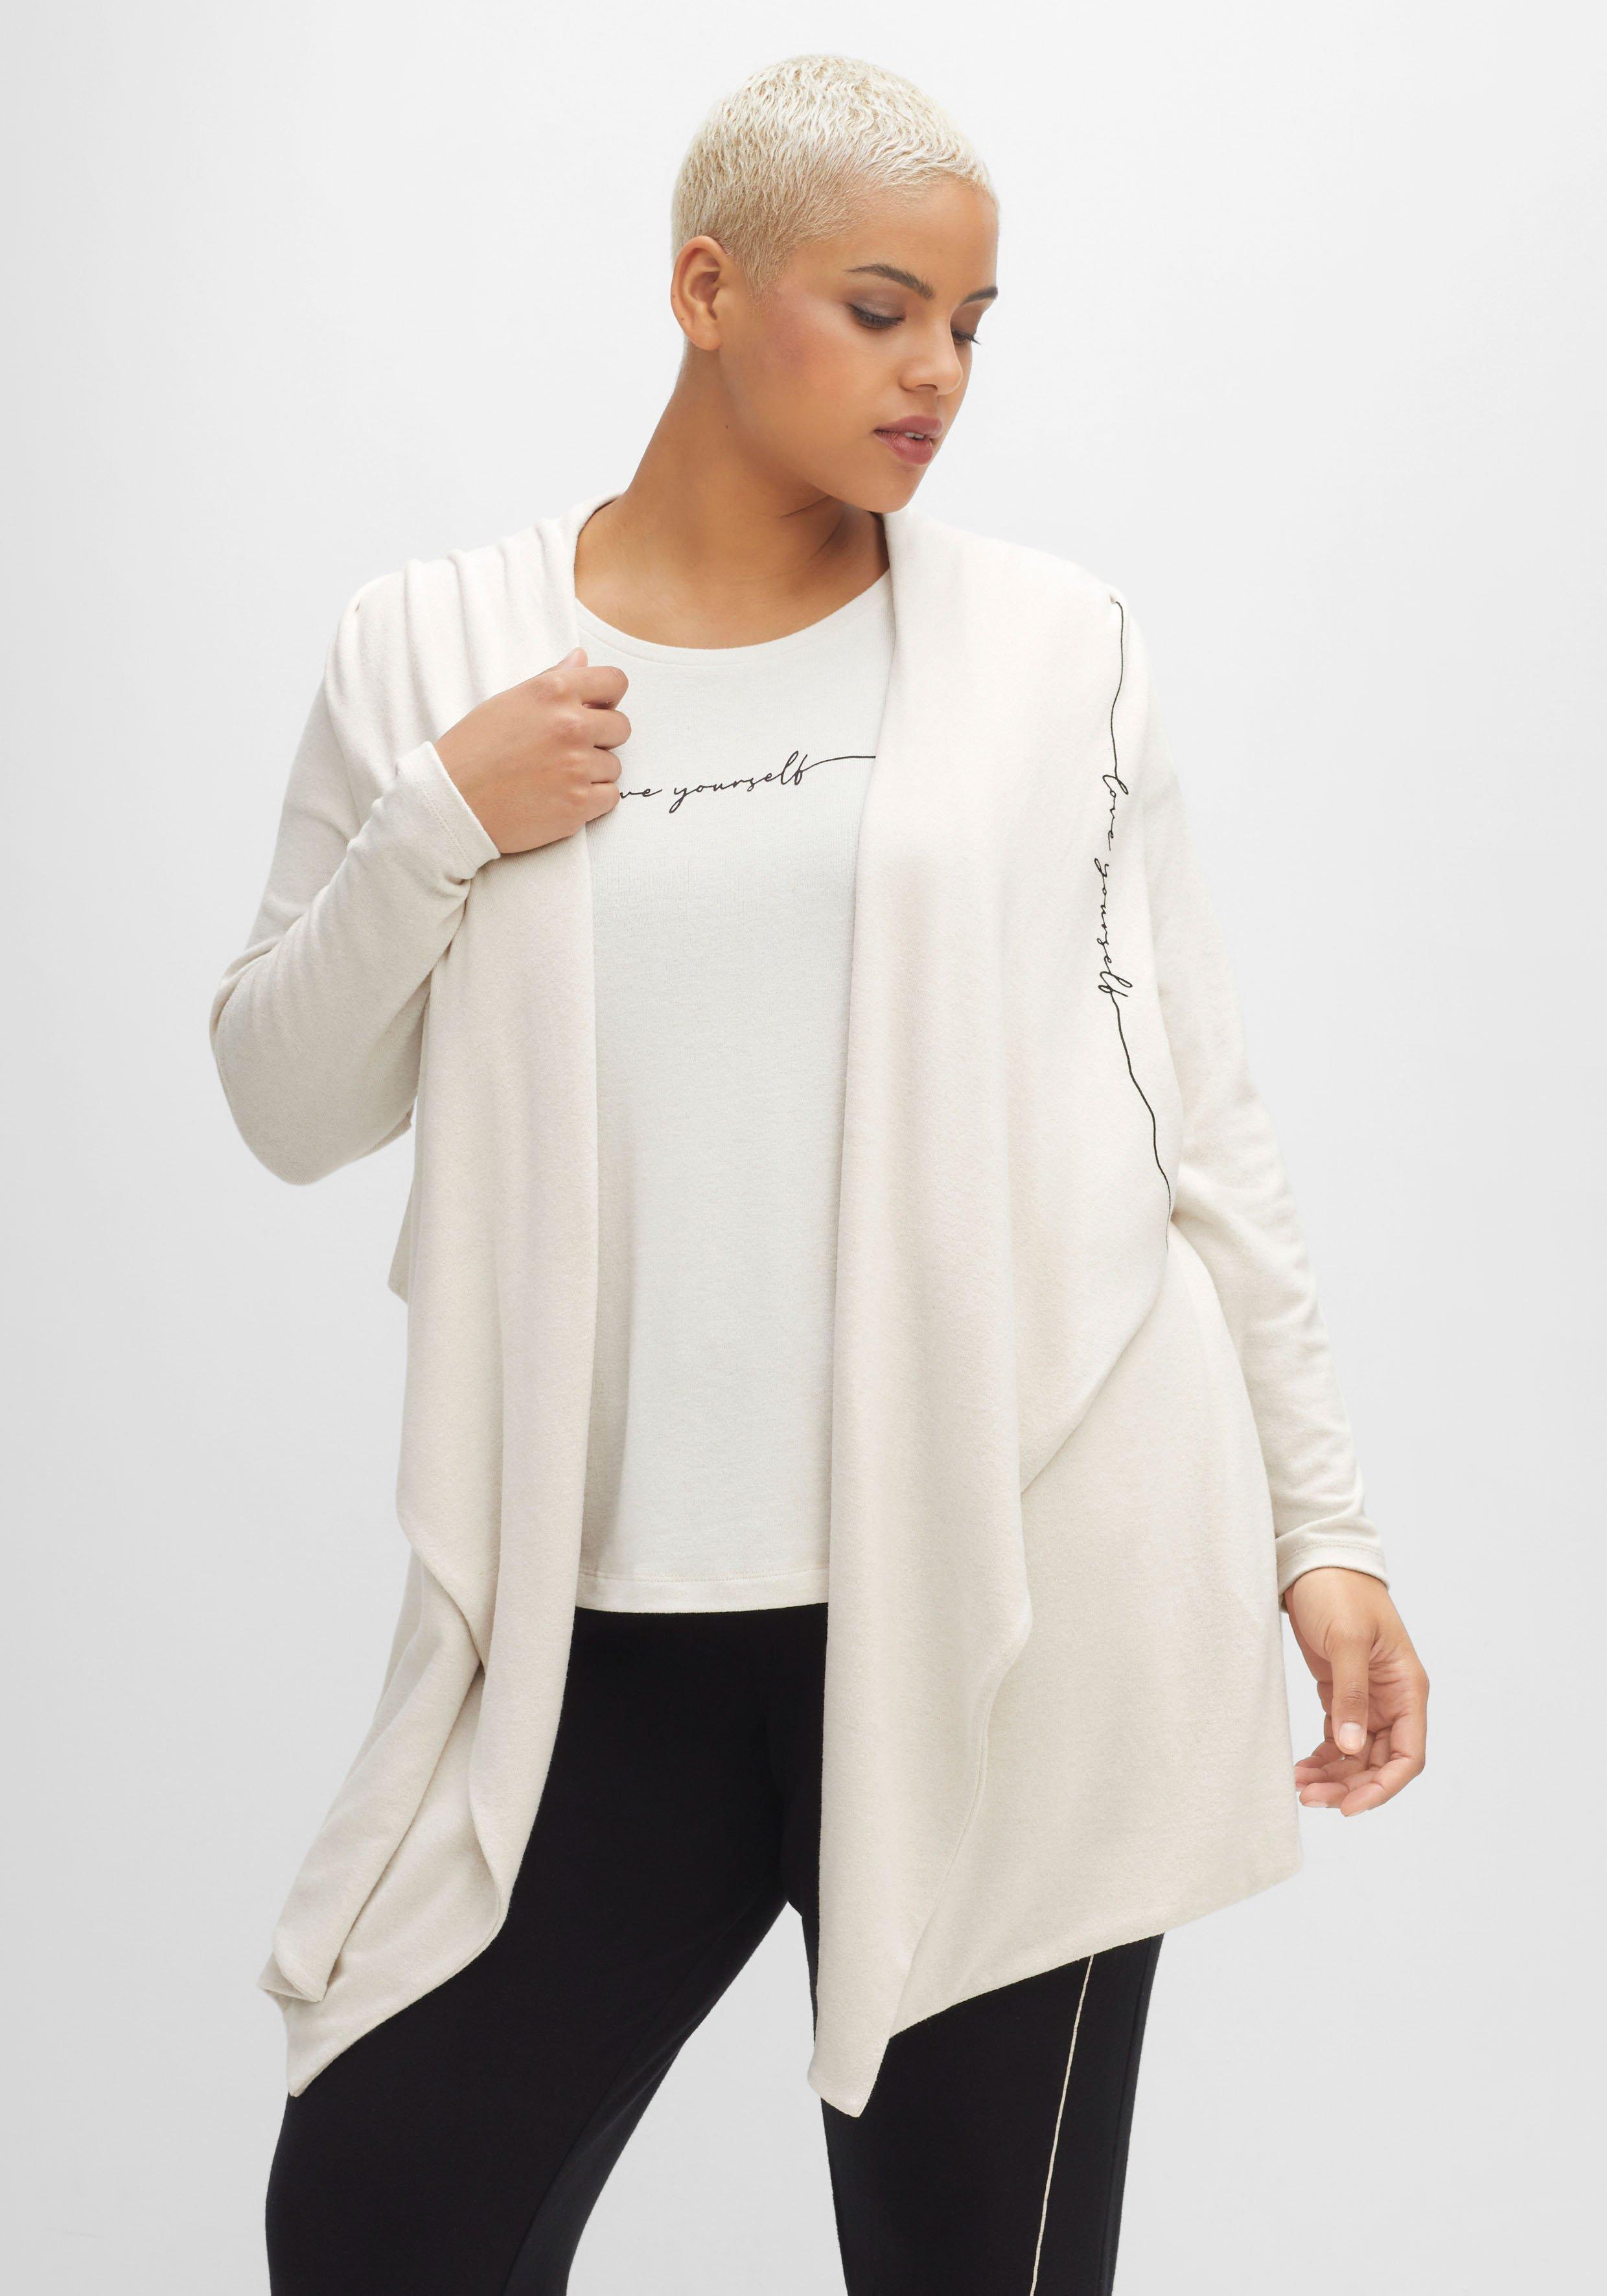 Damen Sweatshirts & -jacken 40 große Mode ♥ weiß › Size Größen Plus Größe sheego 